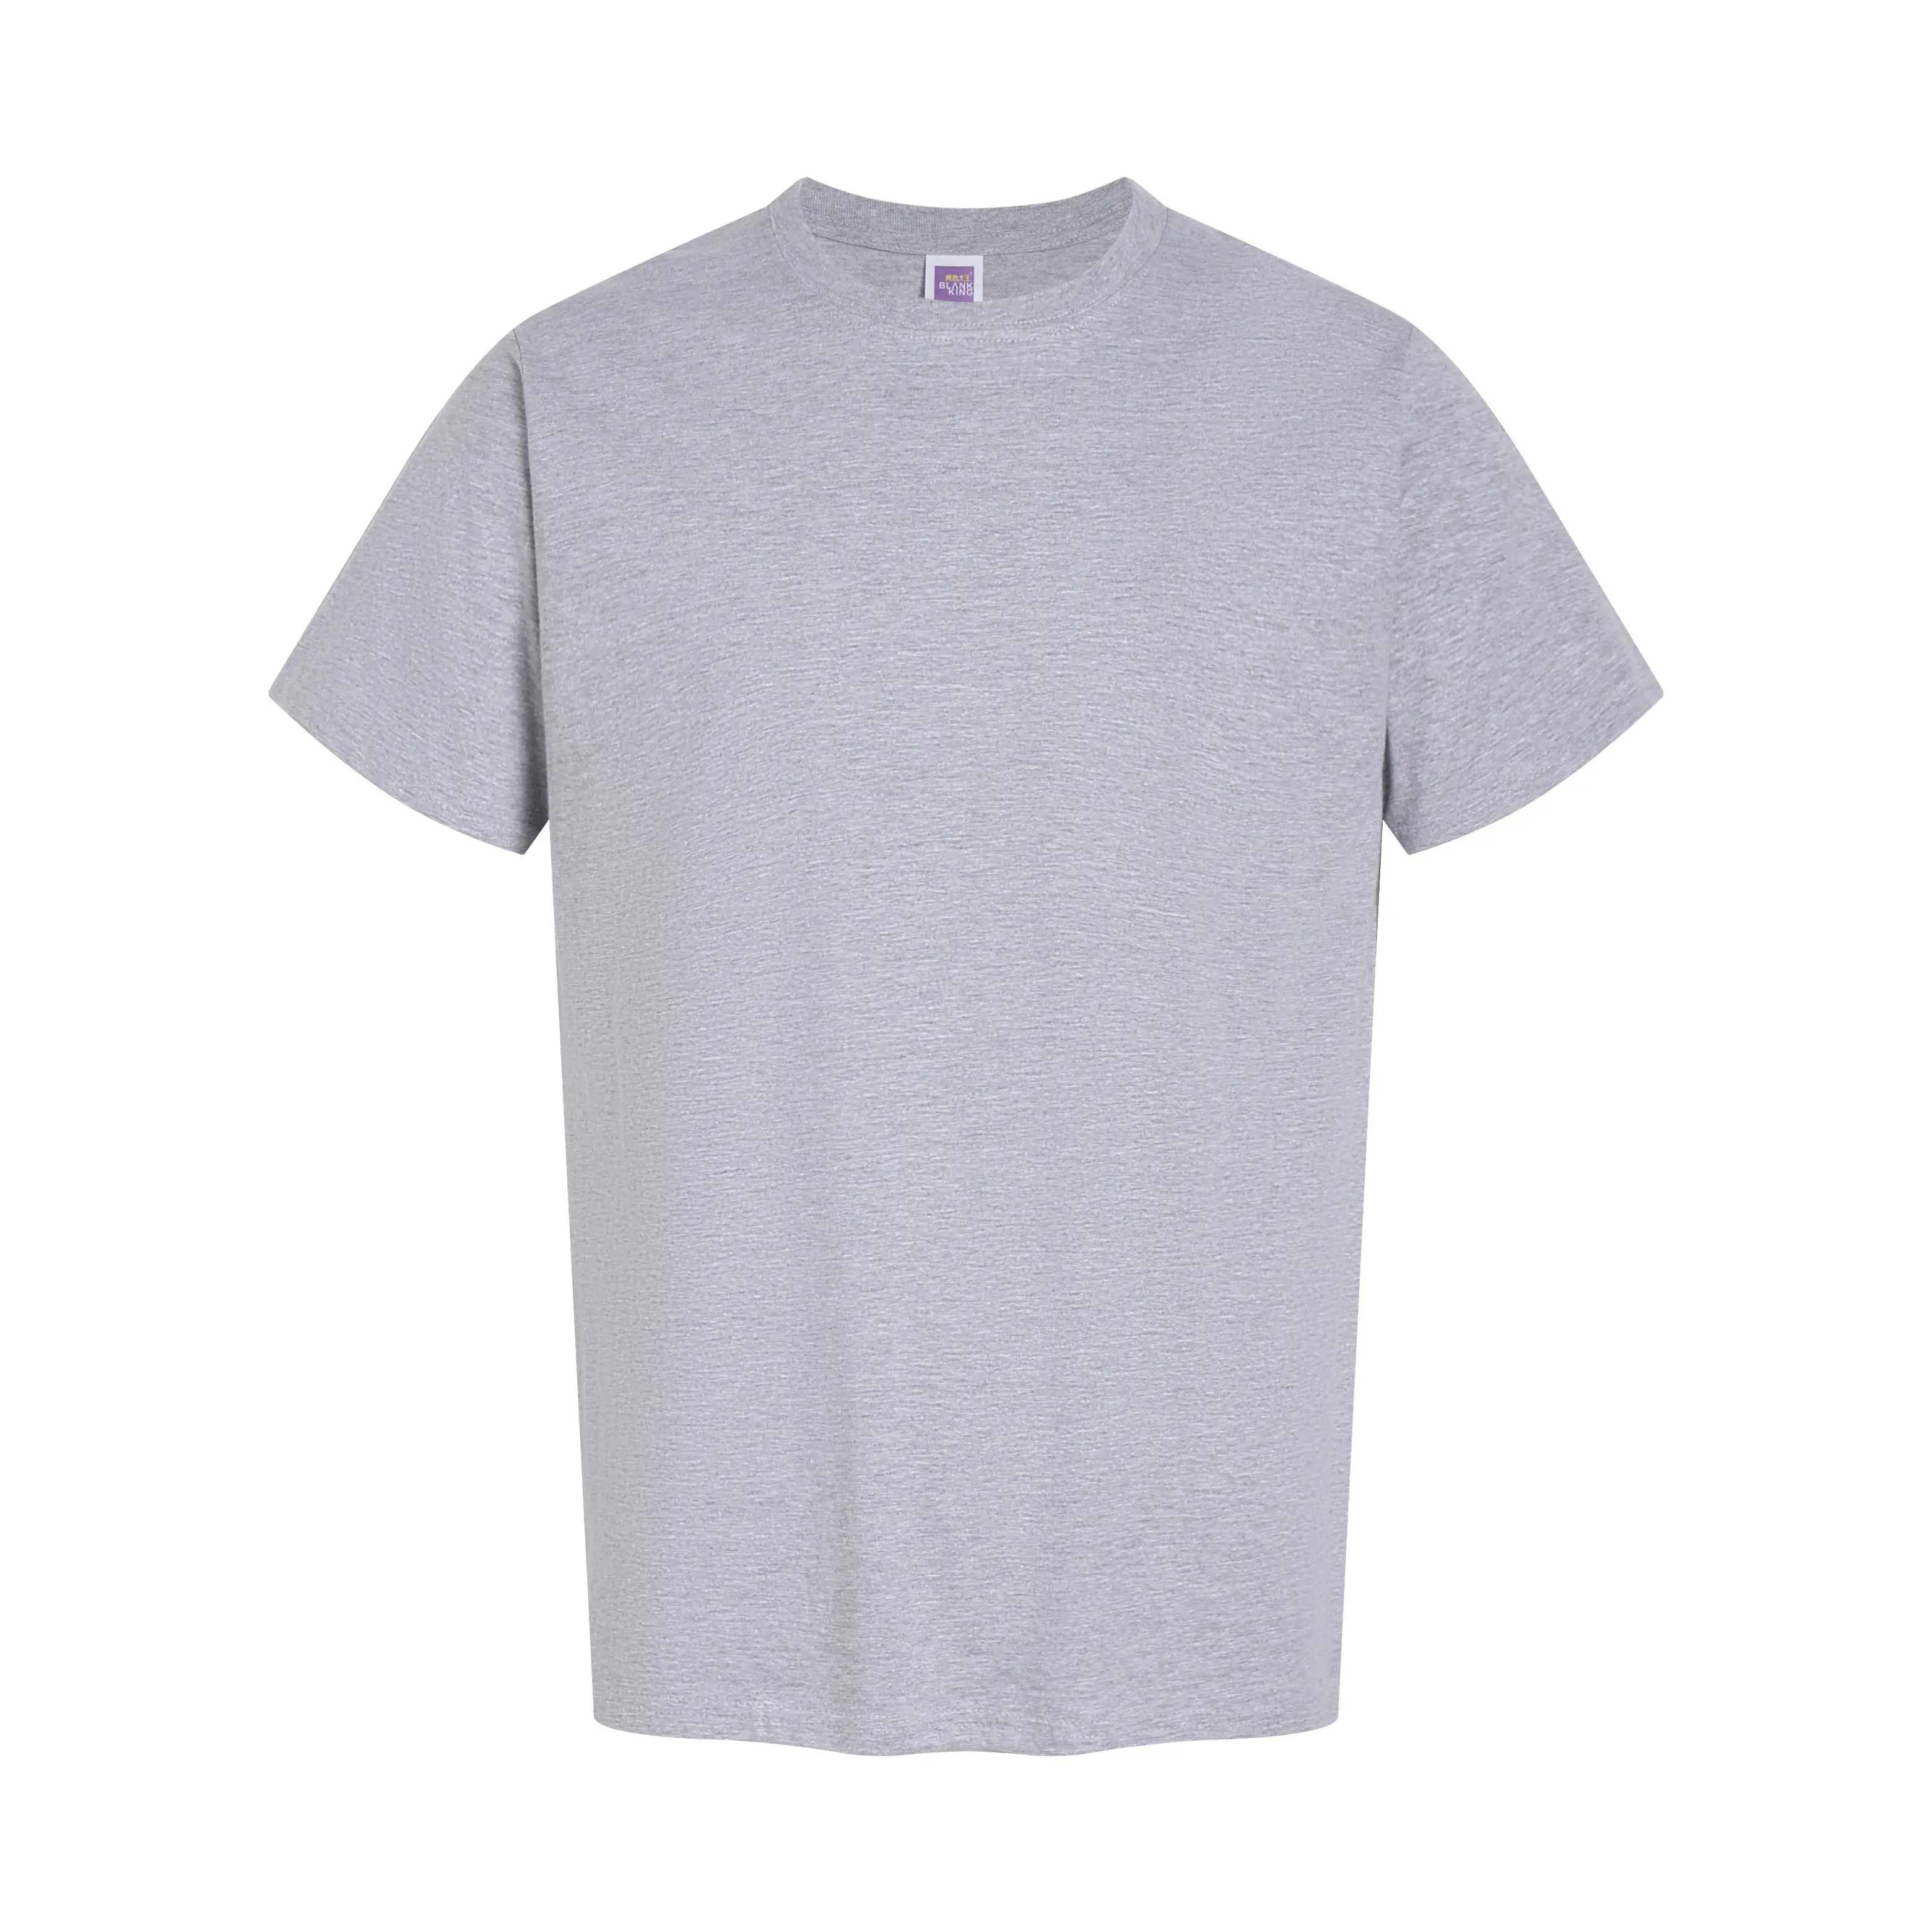 Özel Logo T Shirt erkekler için % 100% pamuk boy T-shirt yuvarlak boyun kısa kollu tişört